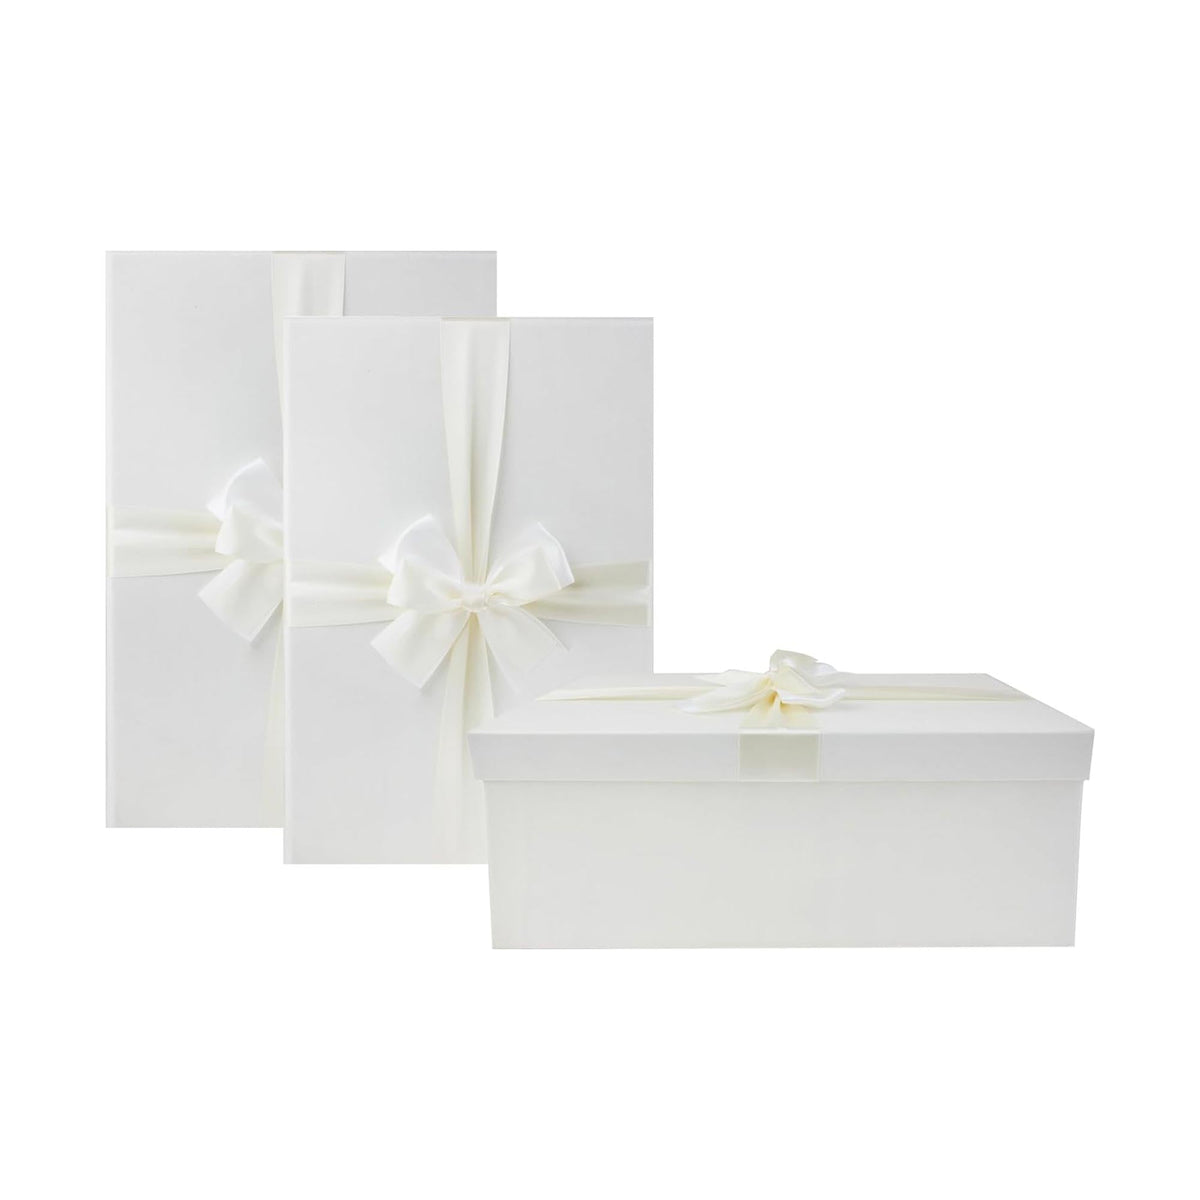 Luxury oversized ivory gift boxes set with ribbon